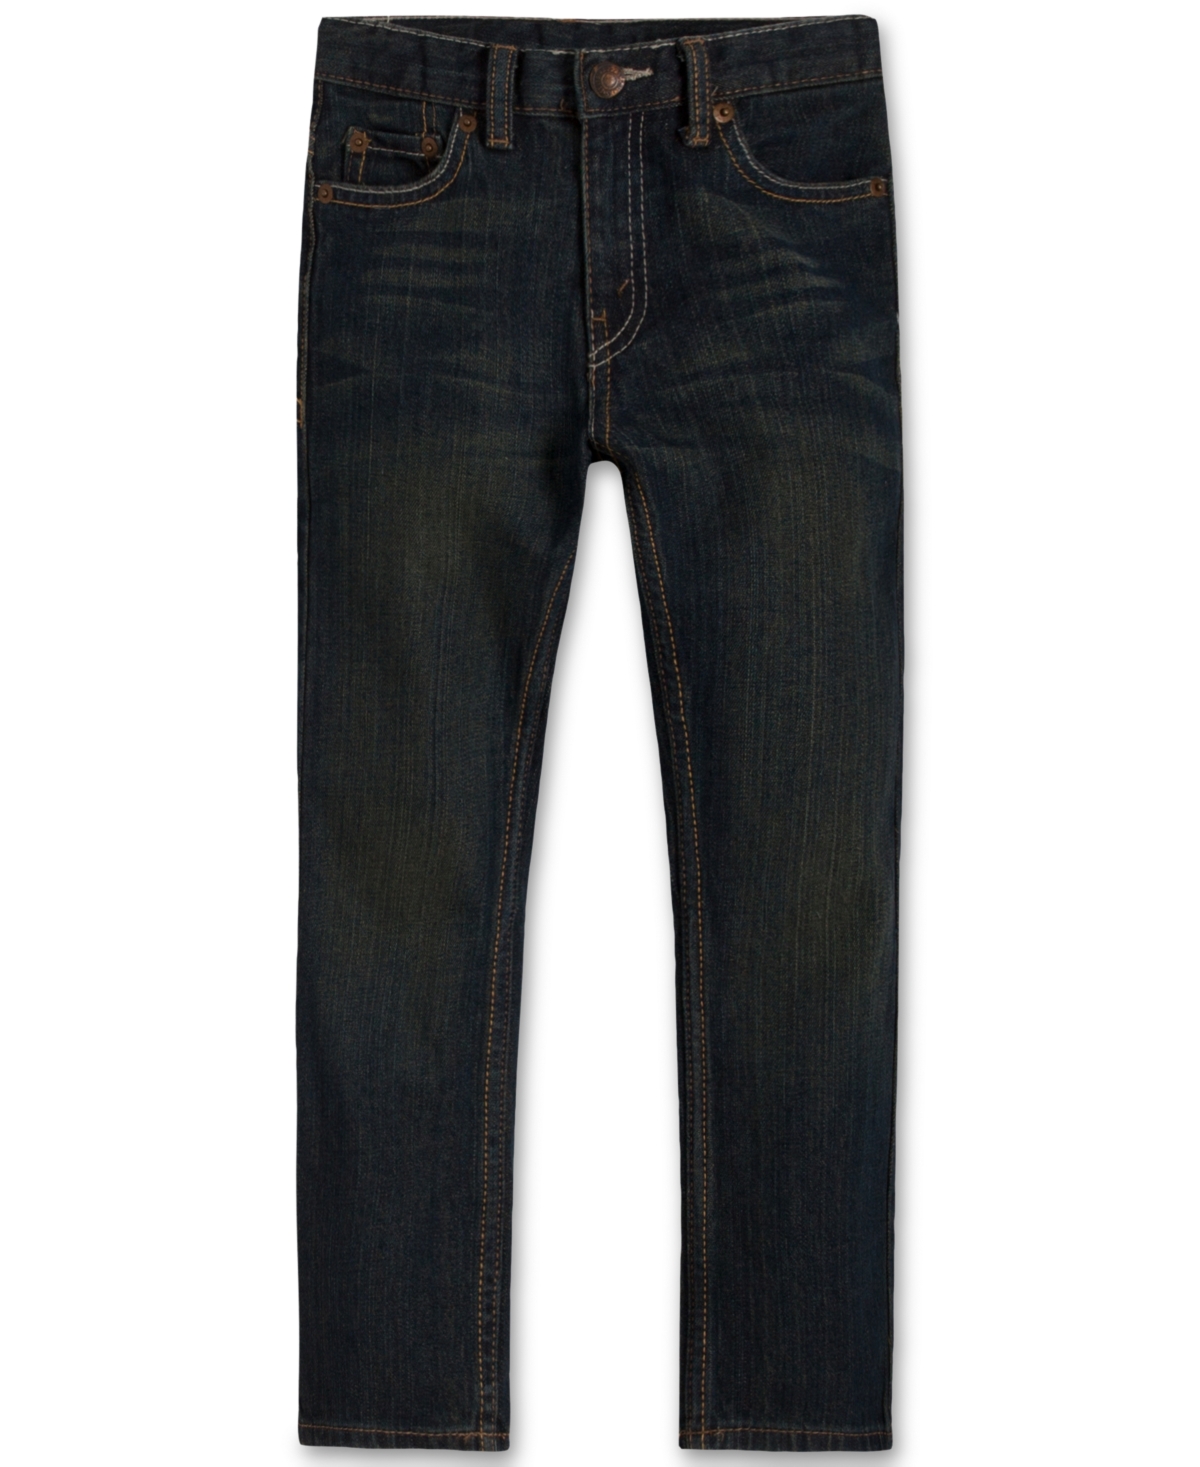 Levi's 511 Slim Fit Jeans, Little Boys